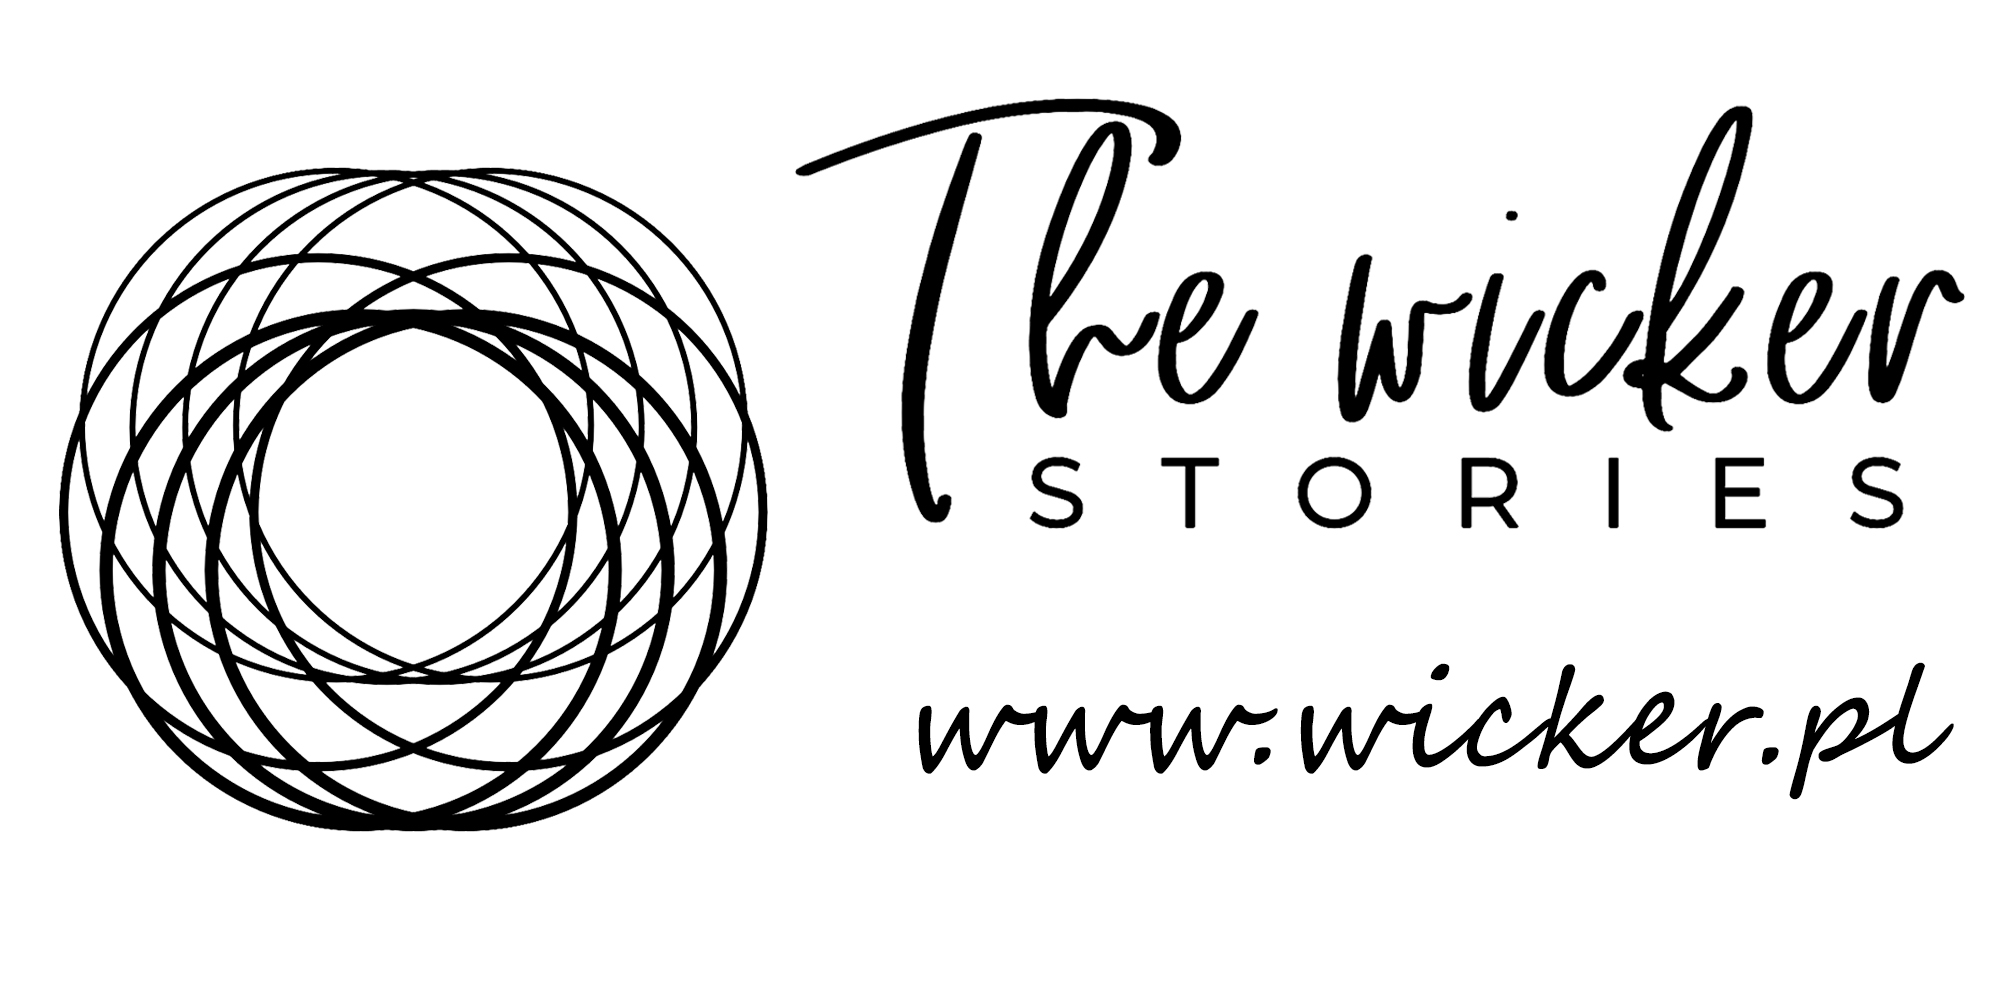 Sklep internetowy wicker.pl the wicker story wiklinowe opowieści logo